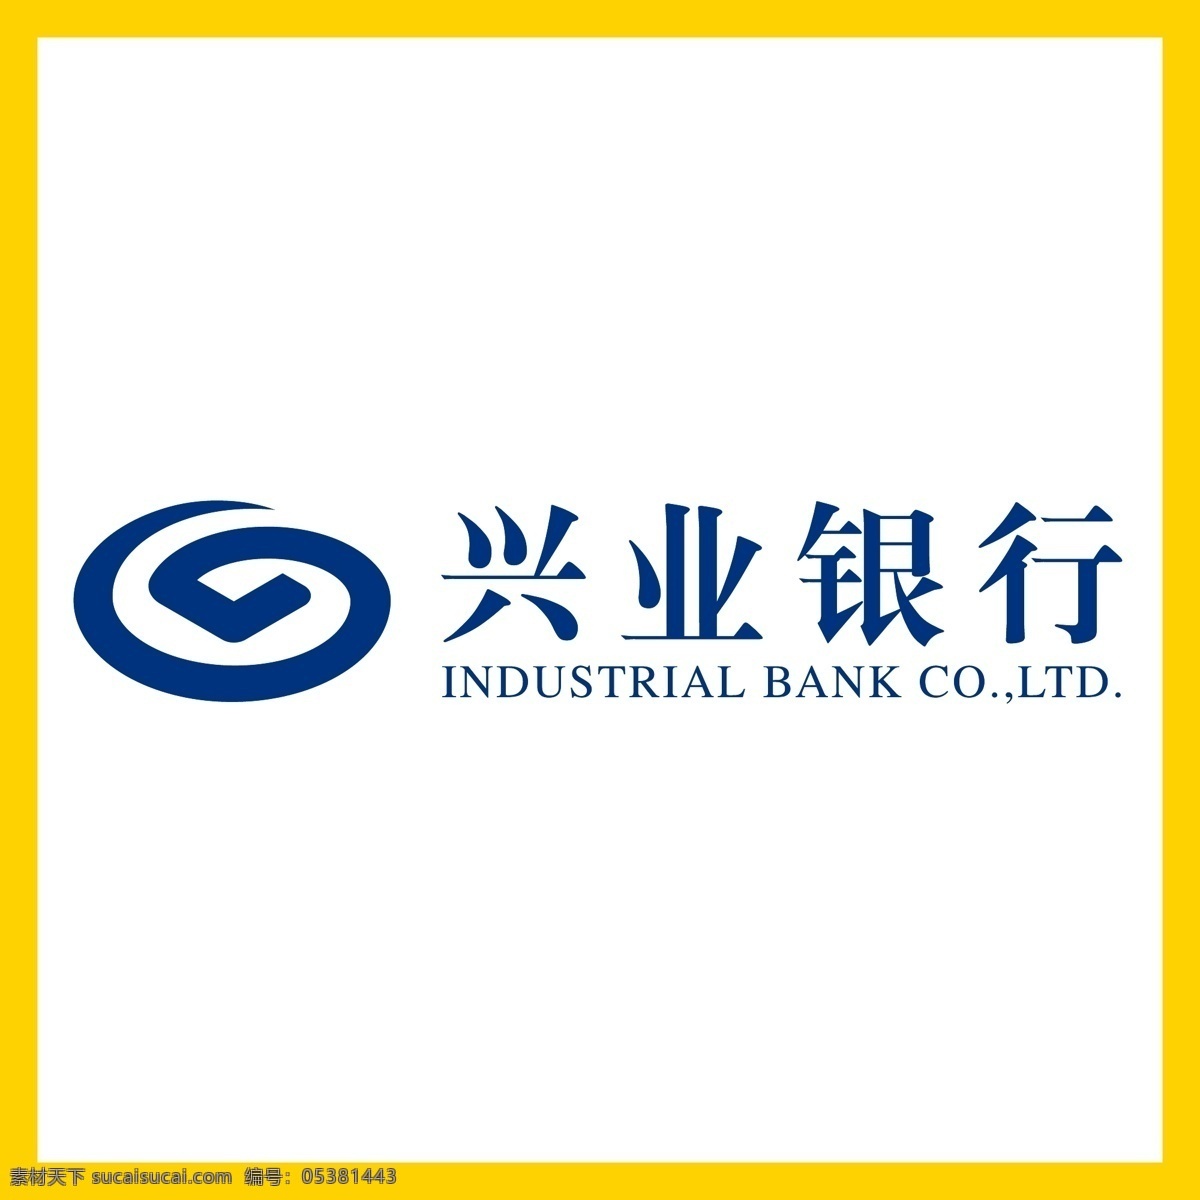 兴业银行 银行 金融 投资理财 理财产品 贷款 国企 事业单位 logo 标志 矢量 vi logo设计